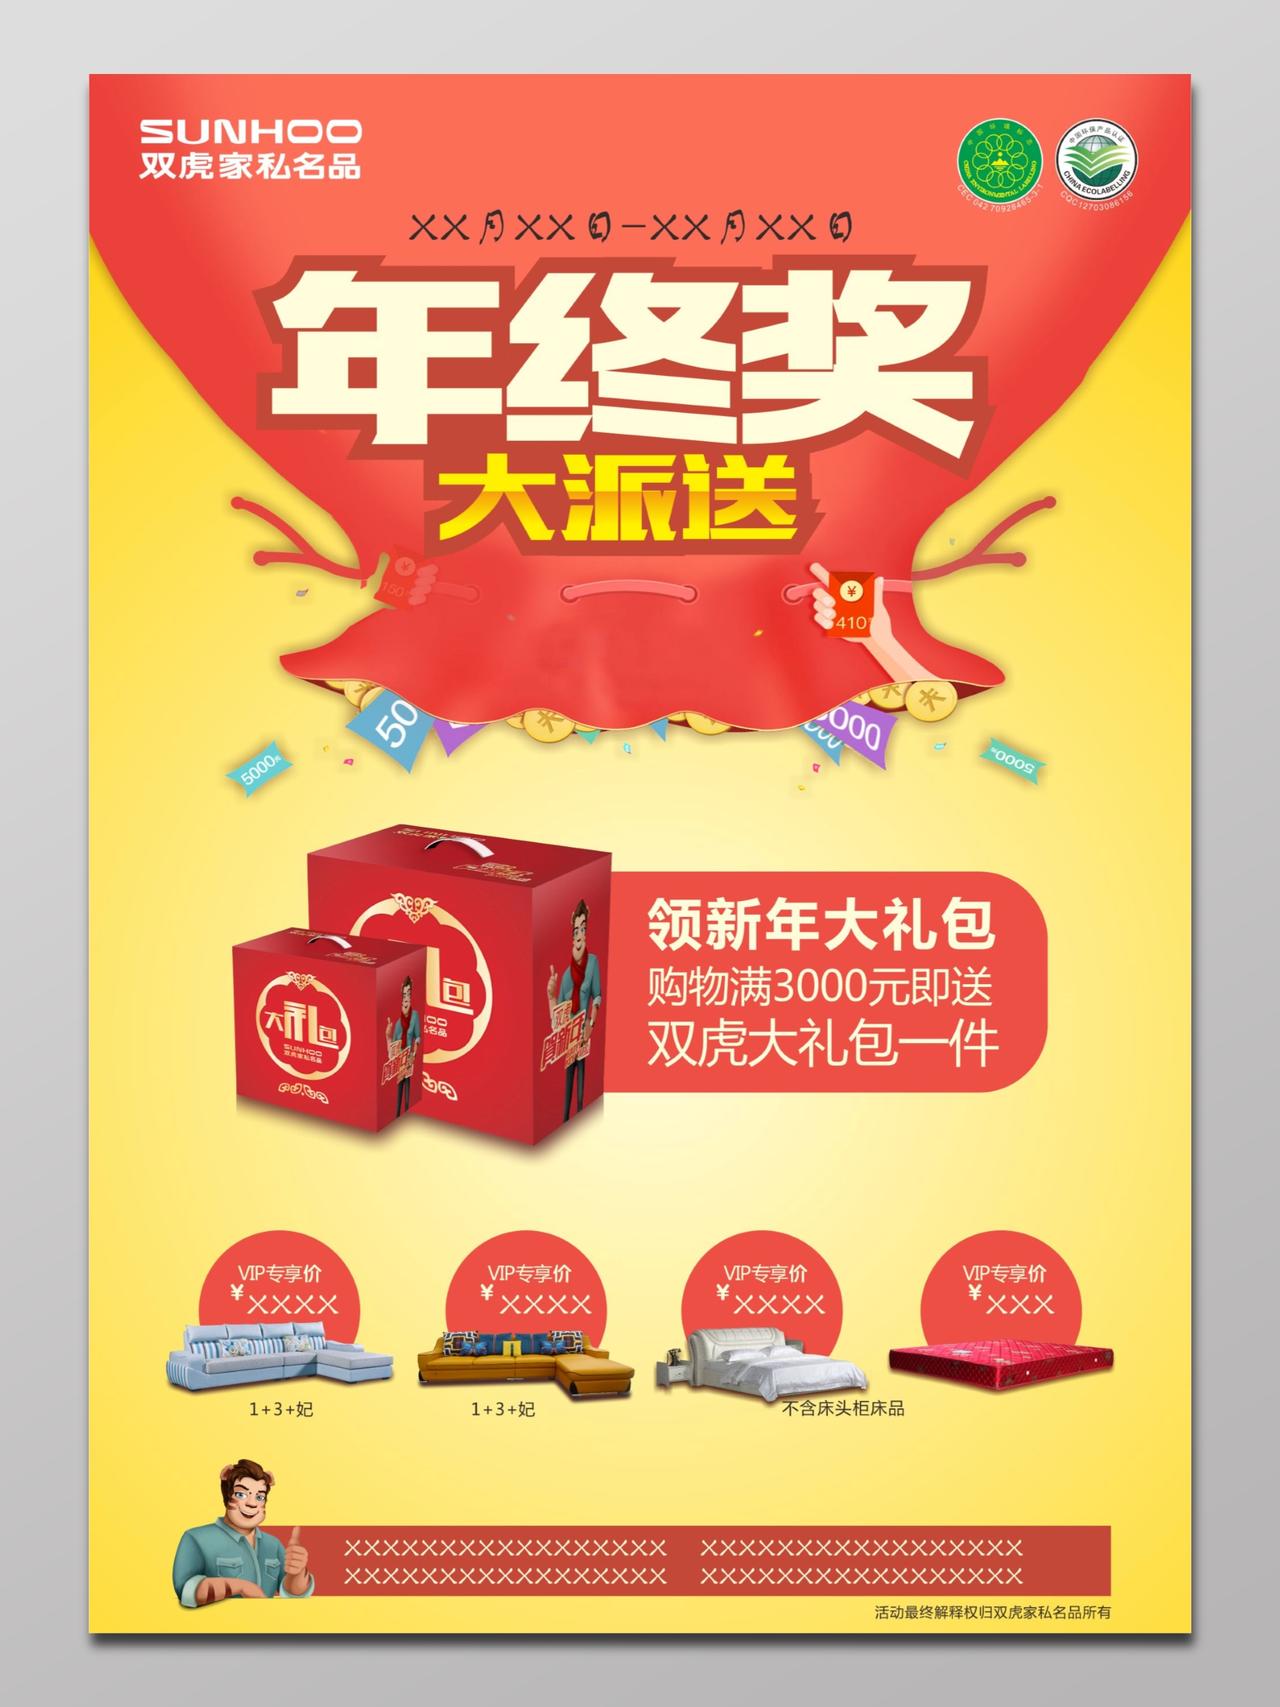 新年春节年终奖家私产品购物促销送礼VIP购买资格海报